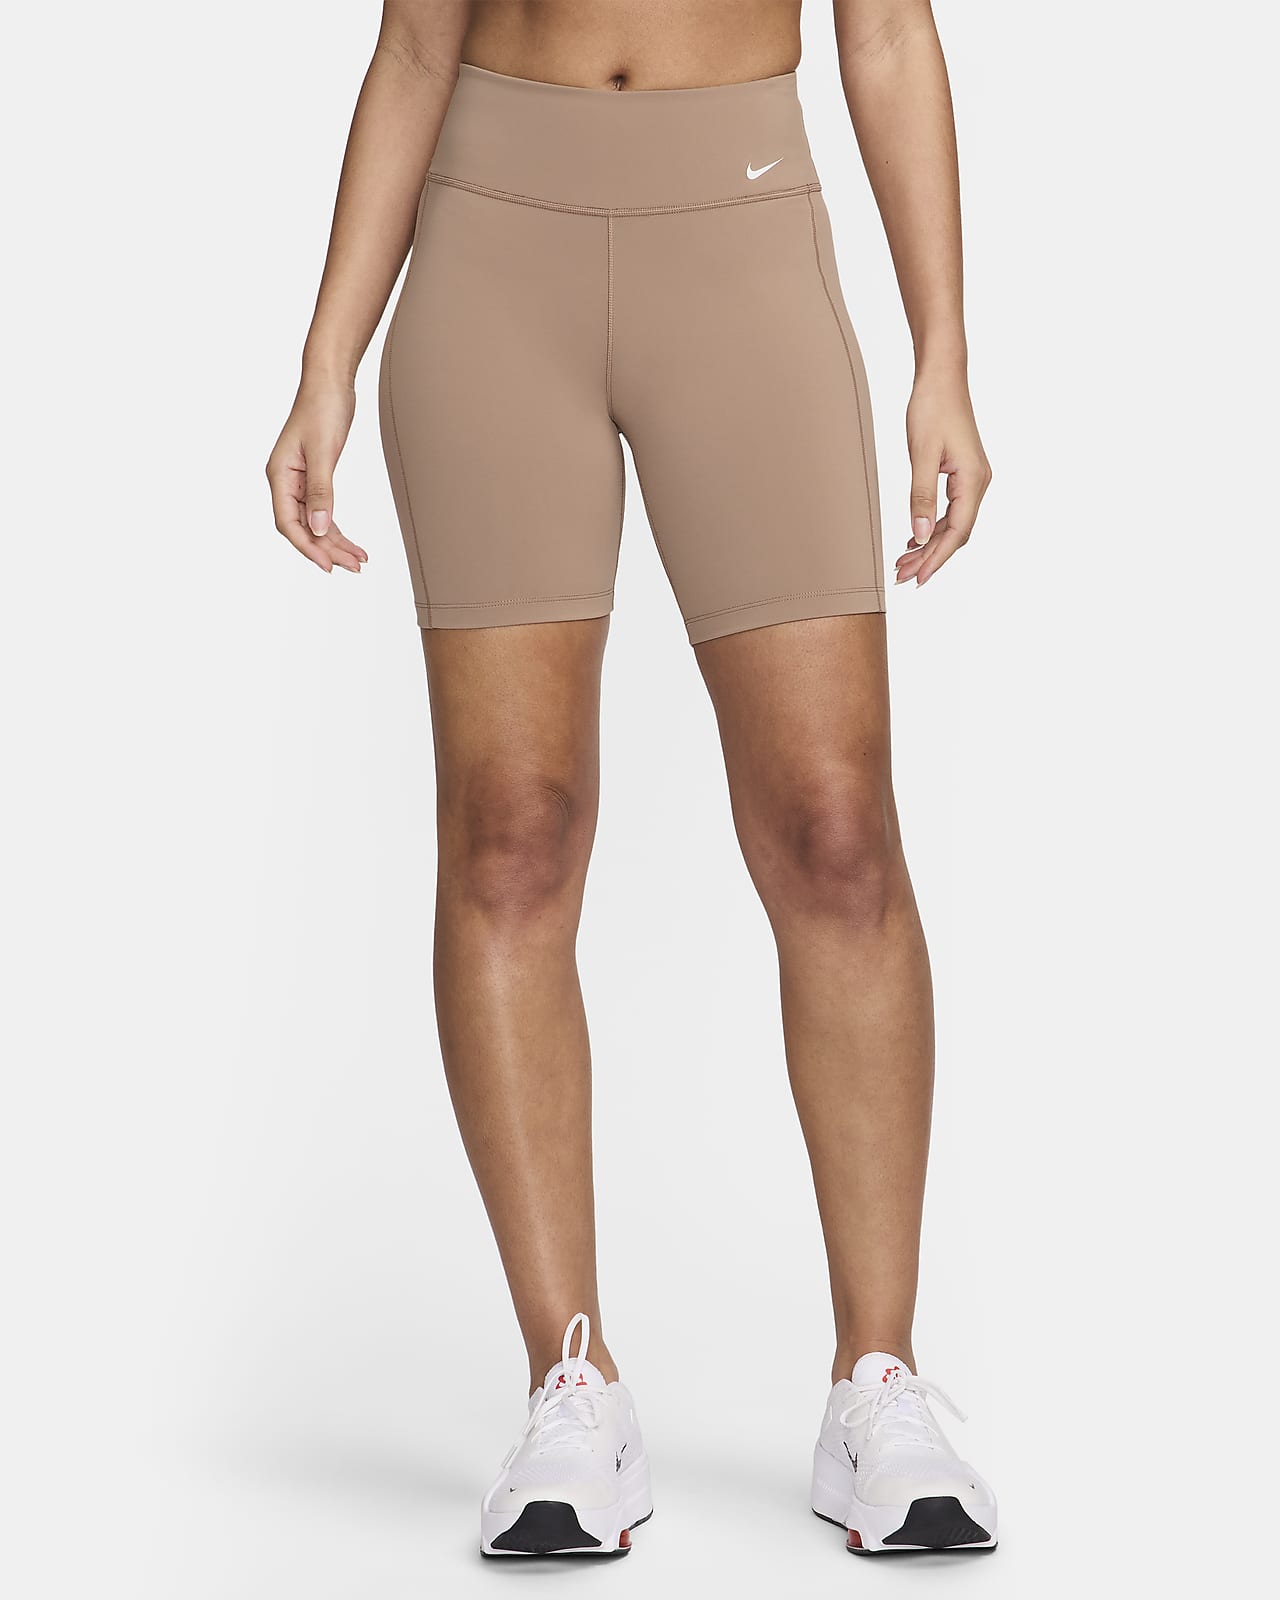 Nike One Leak Protection: Periodensichere Bike-Shorts mit mittelhohem Bund für Damen (ca. 18 cm)